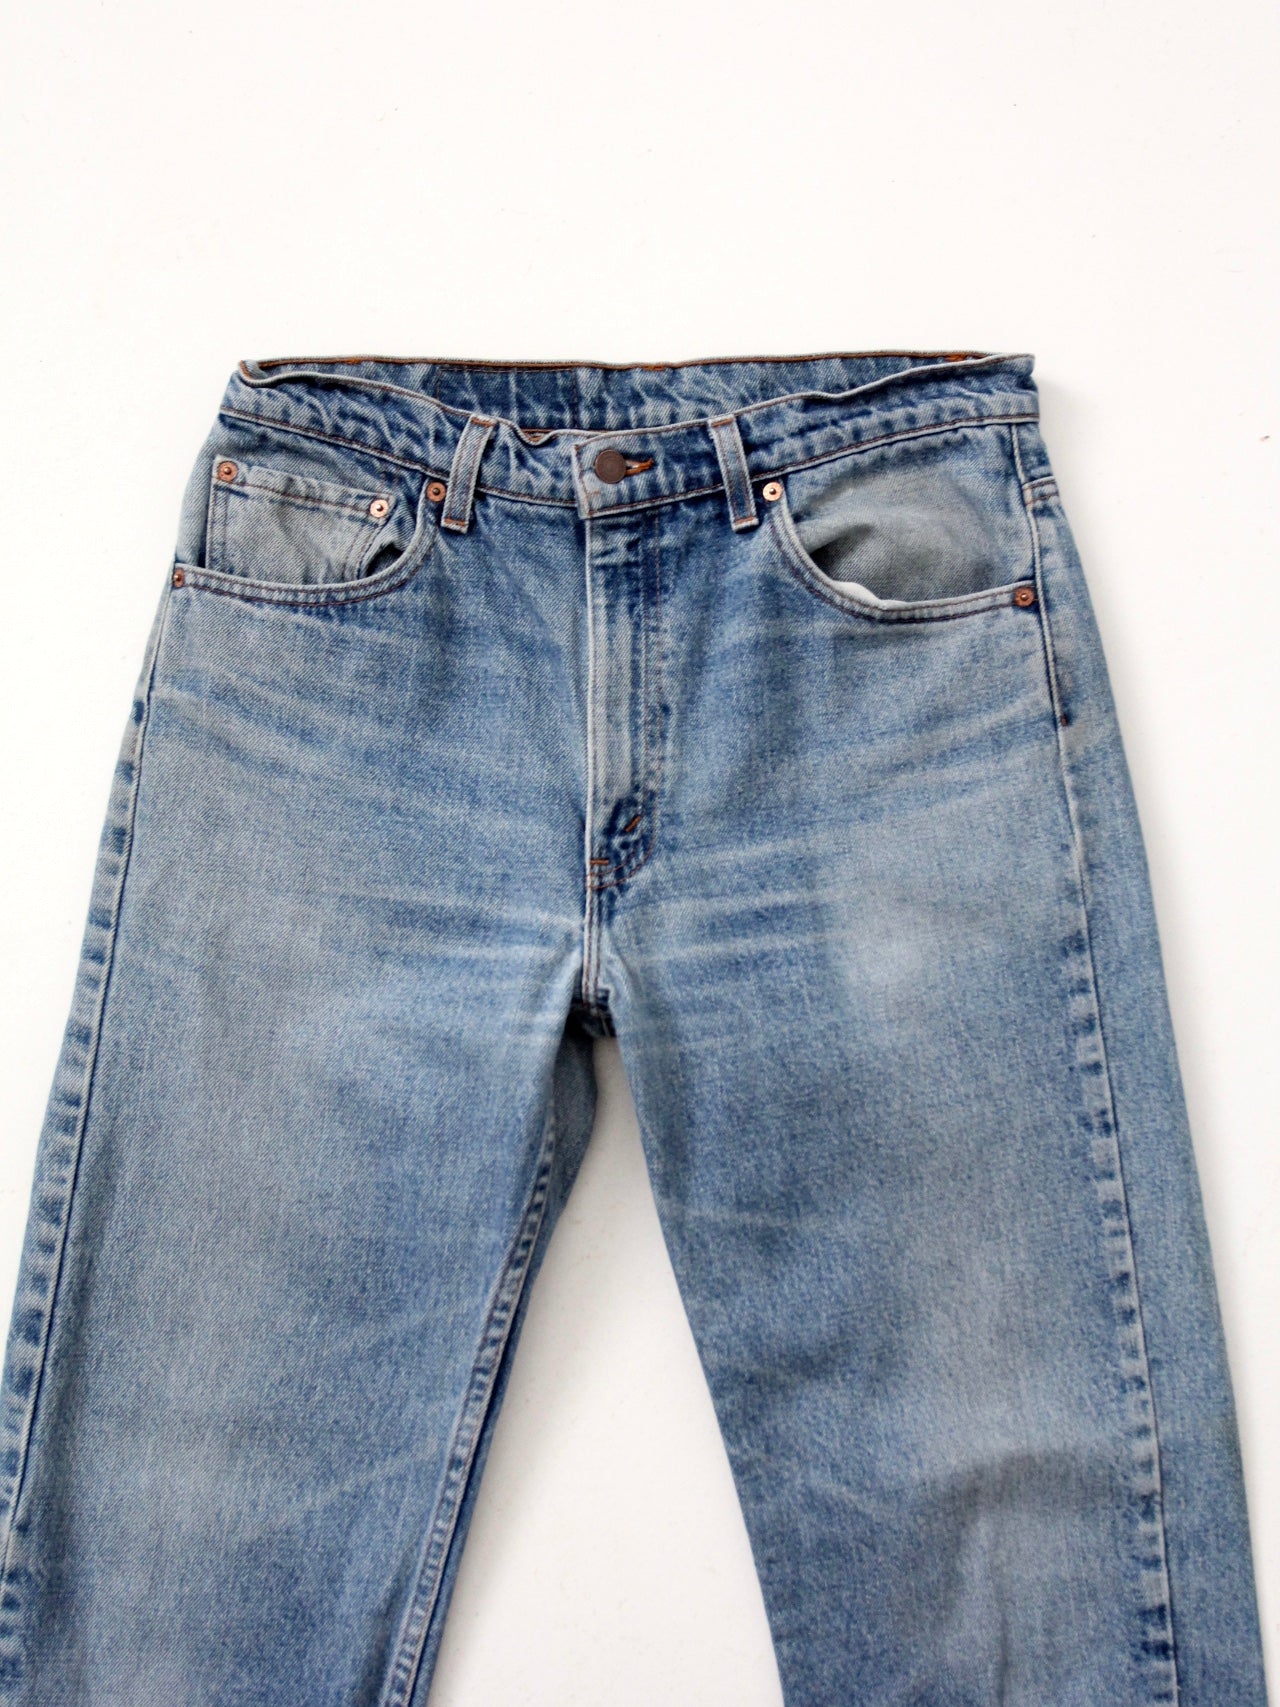 vintage Levis 505 jeans, 33 x 30